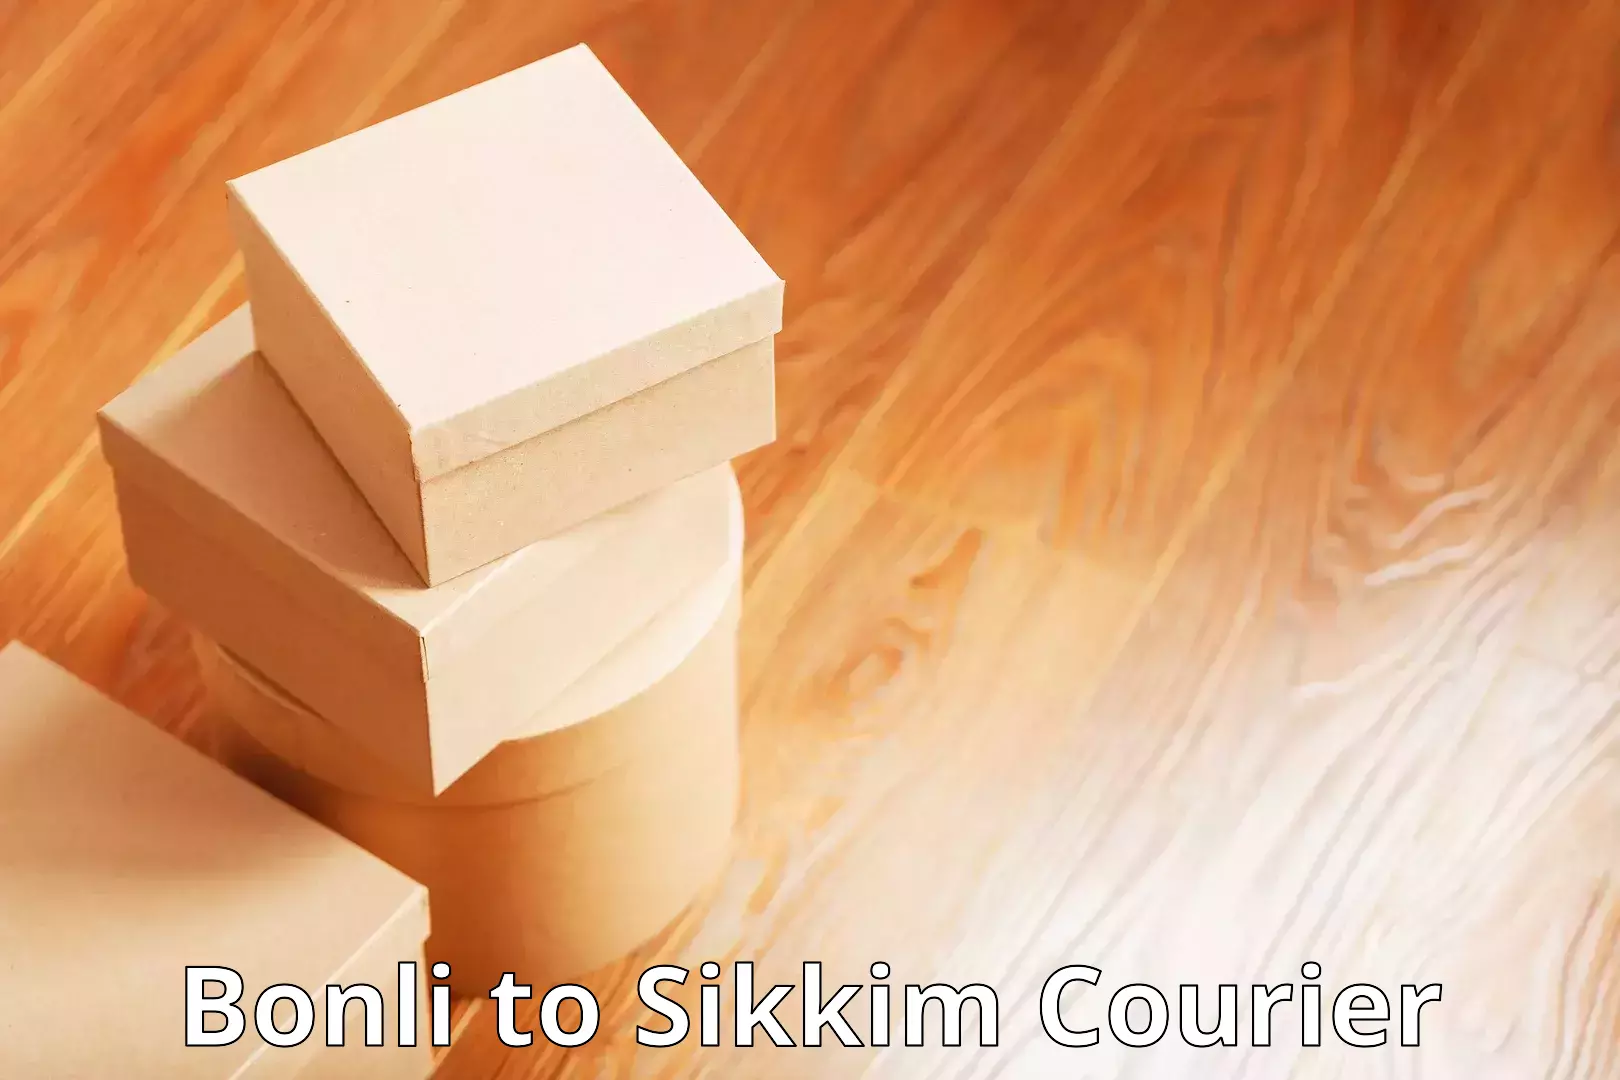 Courier service comparison Bonli to North Sikkim